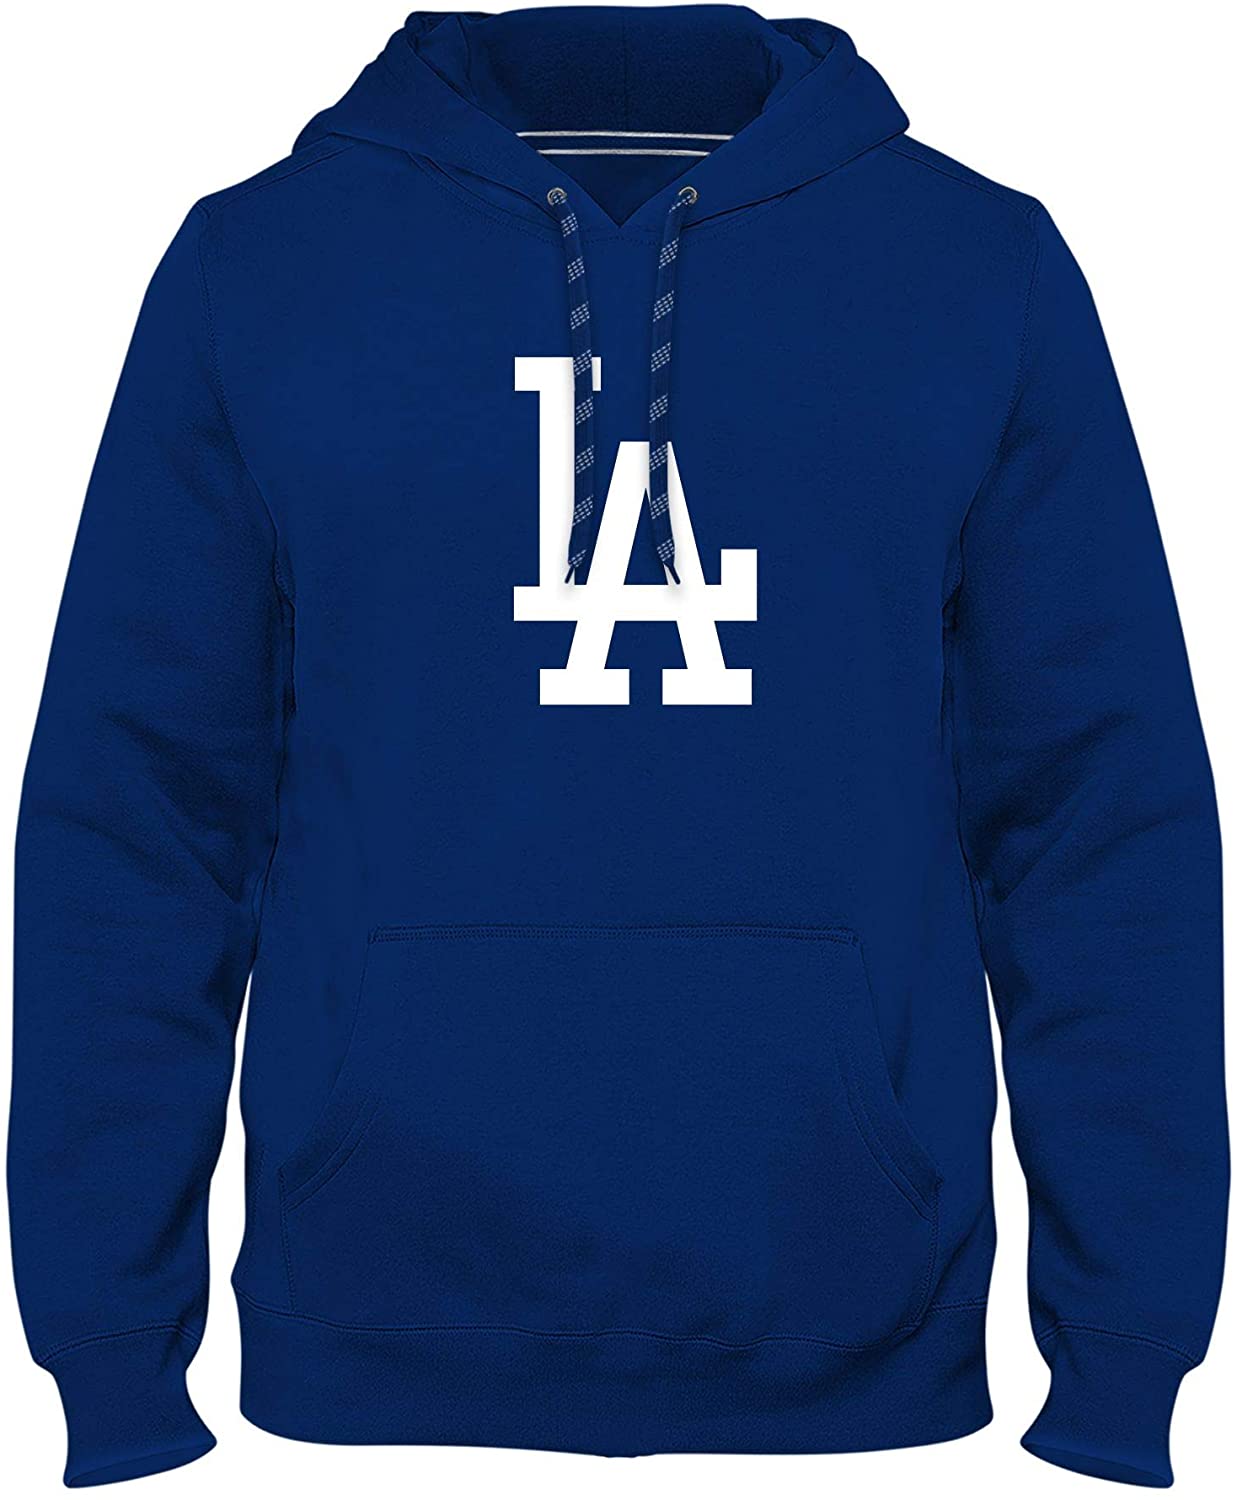 L.A. Dodgers Sweatshirt, Dodgers Hoodies, Dodgers Fleece